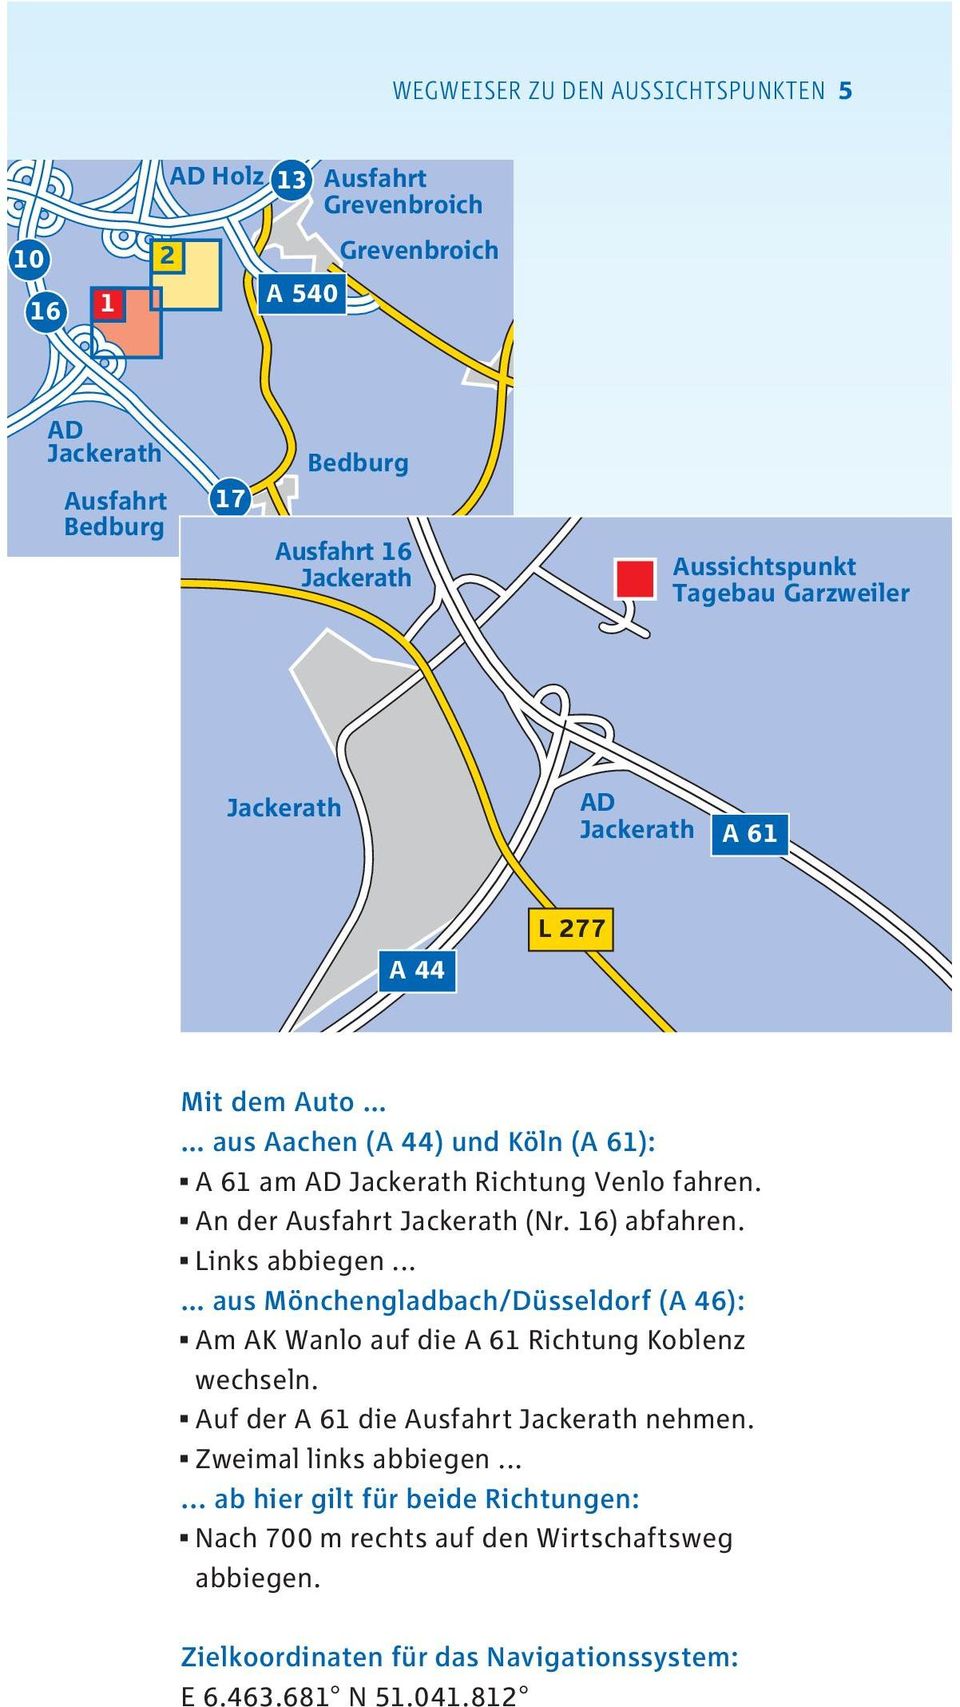 Links abbiegen... aus Mönchengladbach/Düsseldorf (A 46): Am AK Wanlo auf die A 61 Richtung Koblenz wechseln. Auf der A 61 die Jackerath nehmen.